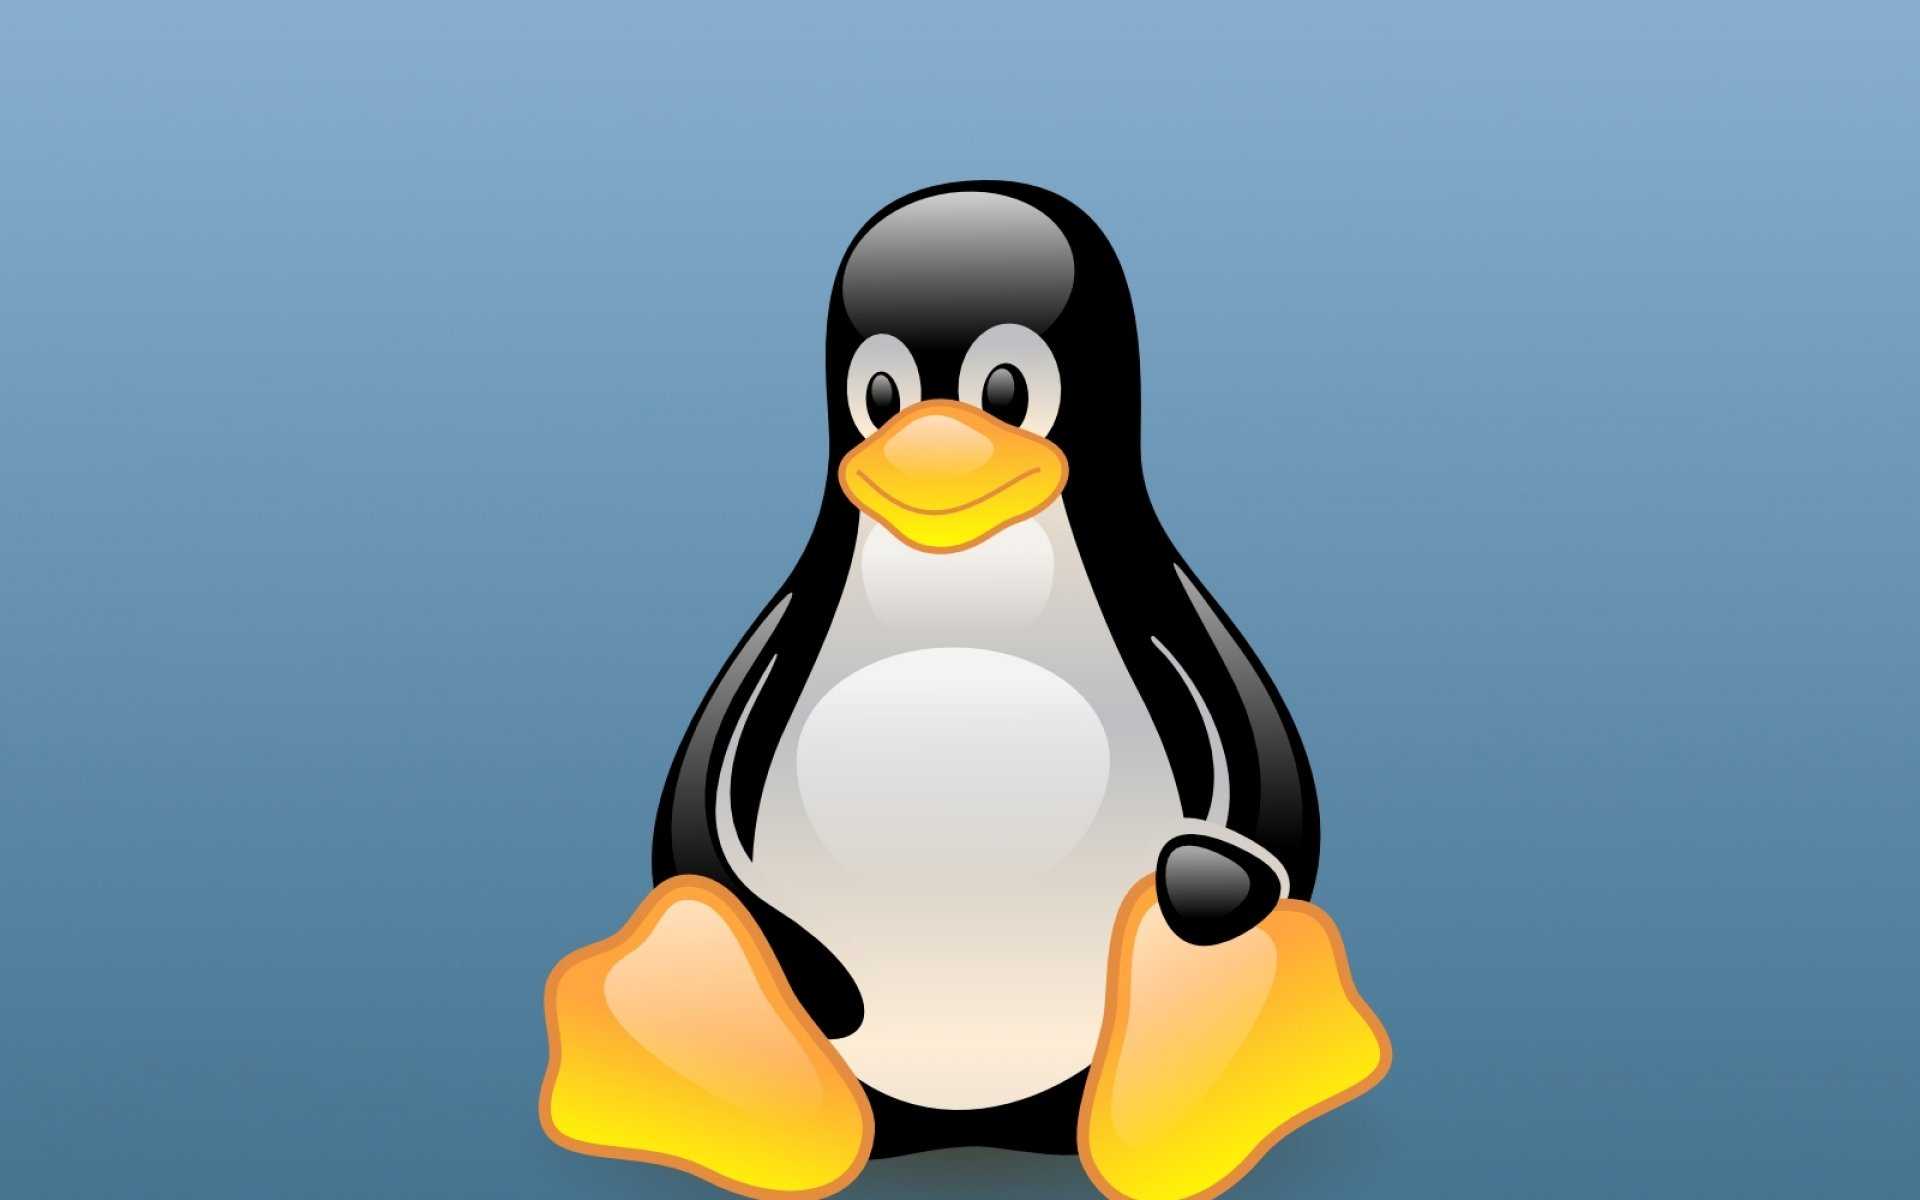 Message linux. Линукс Операционная система. Оперативная система линукс. Пингвинчик линукс. Логотип ОС линукс.